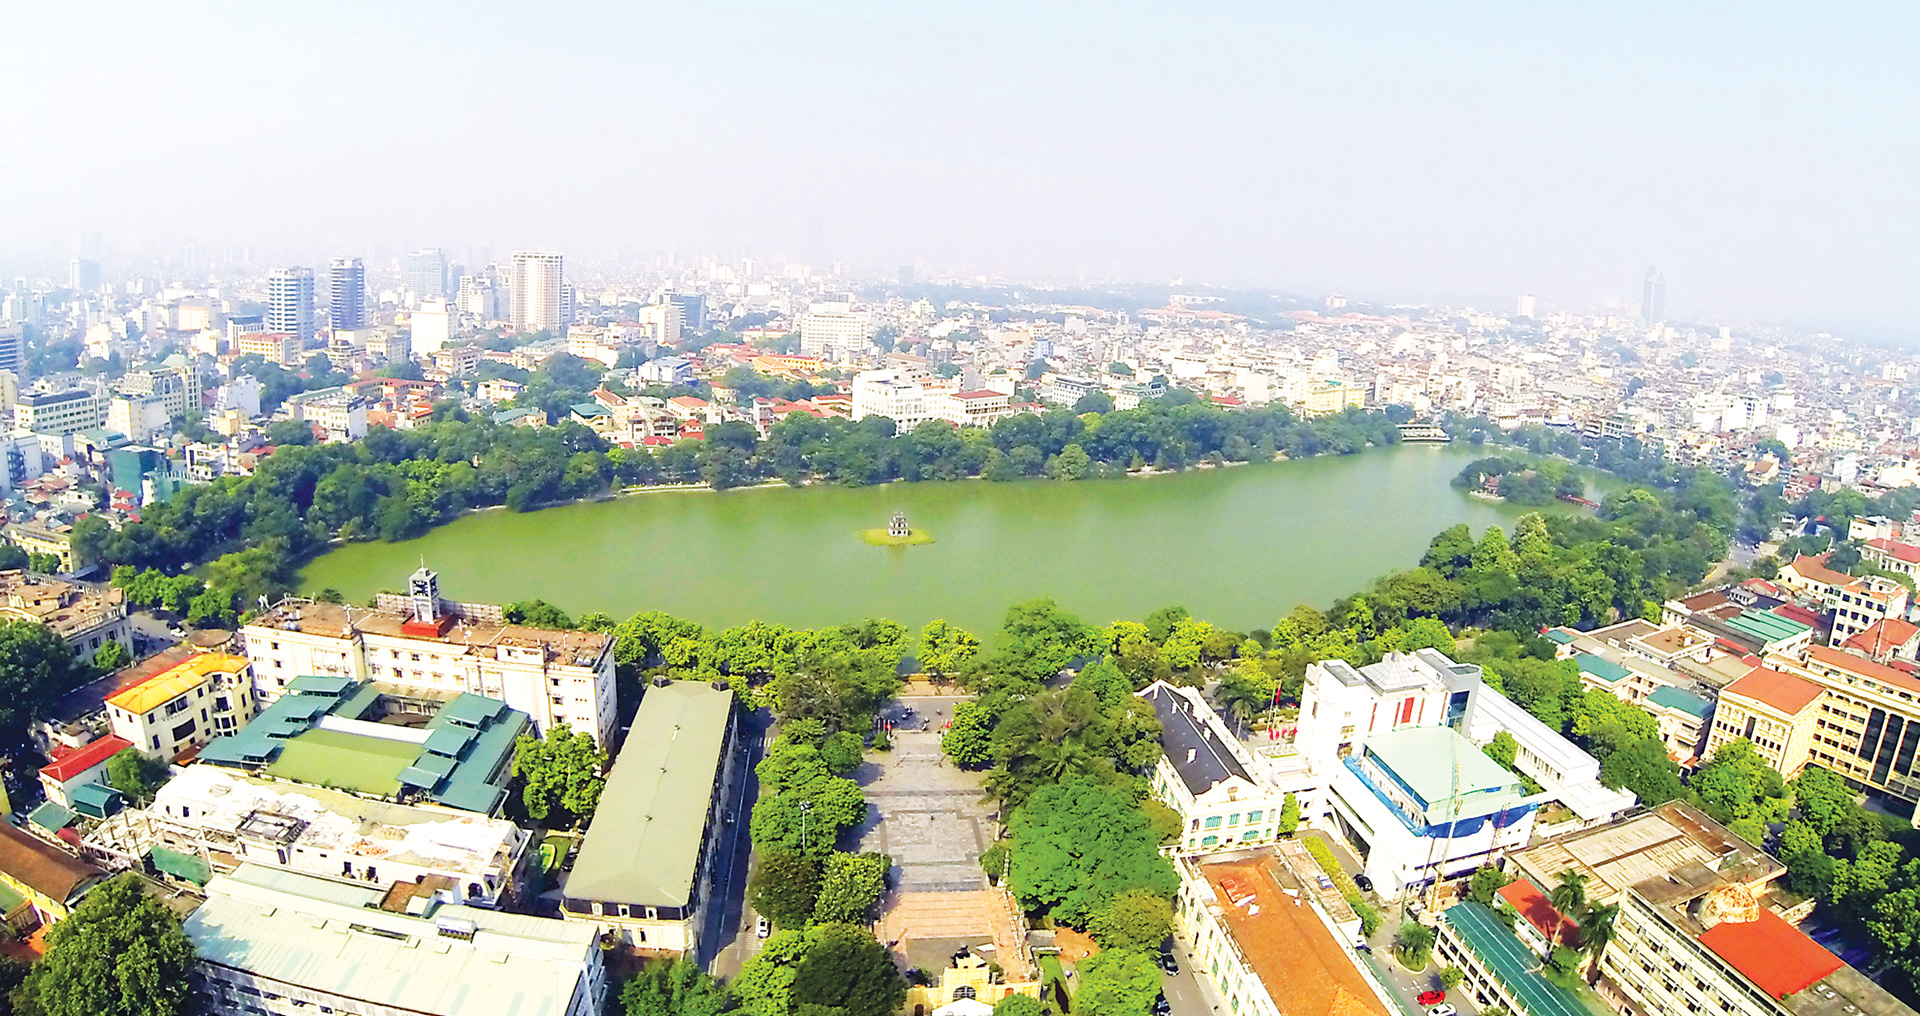 Hà Nội - Thủ đô nghìn năm văn hiến. Ảnh: hanoimoi.com.vn